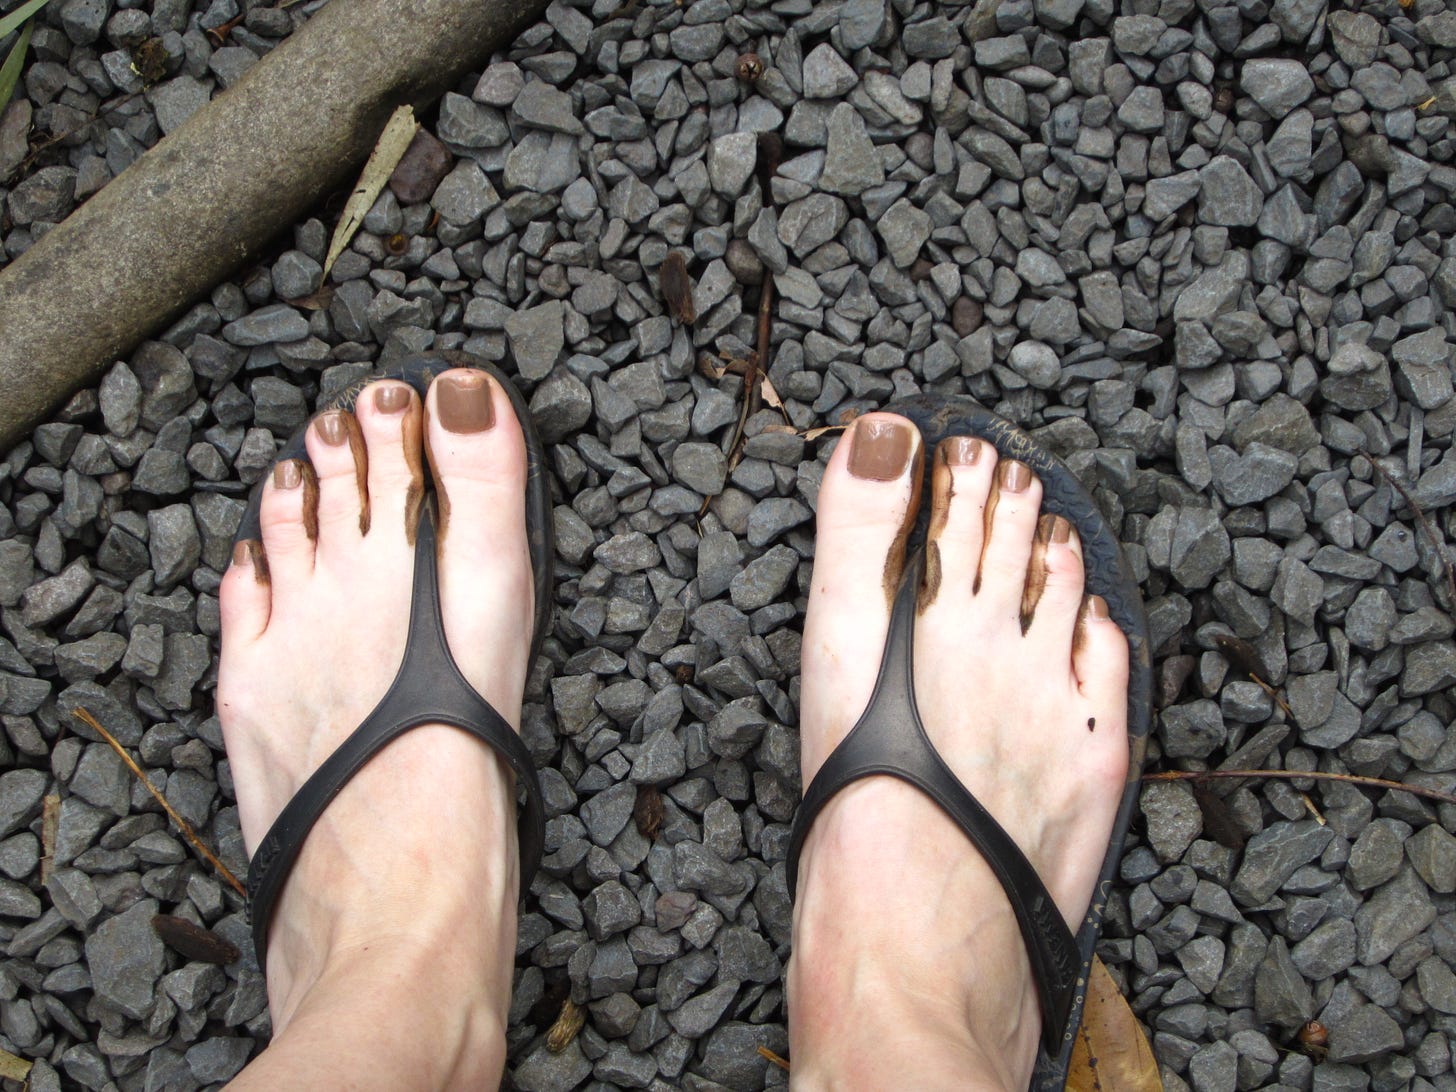 pair of bare feet in flip-flops, standing on grey crushed stones, brown painted toenails, brown Hawaiian mud squishing up between toes.